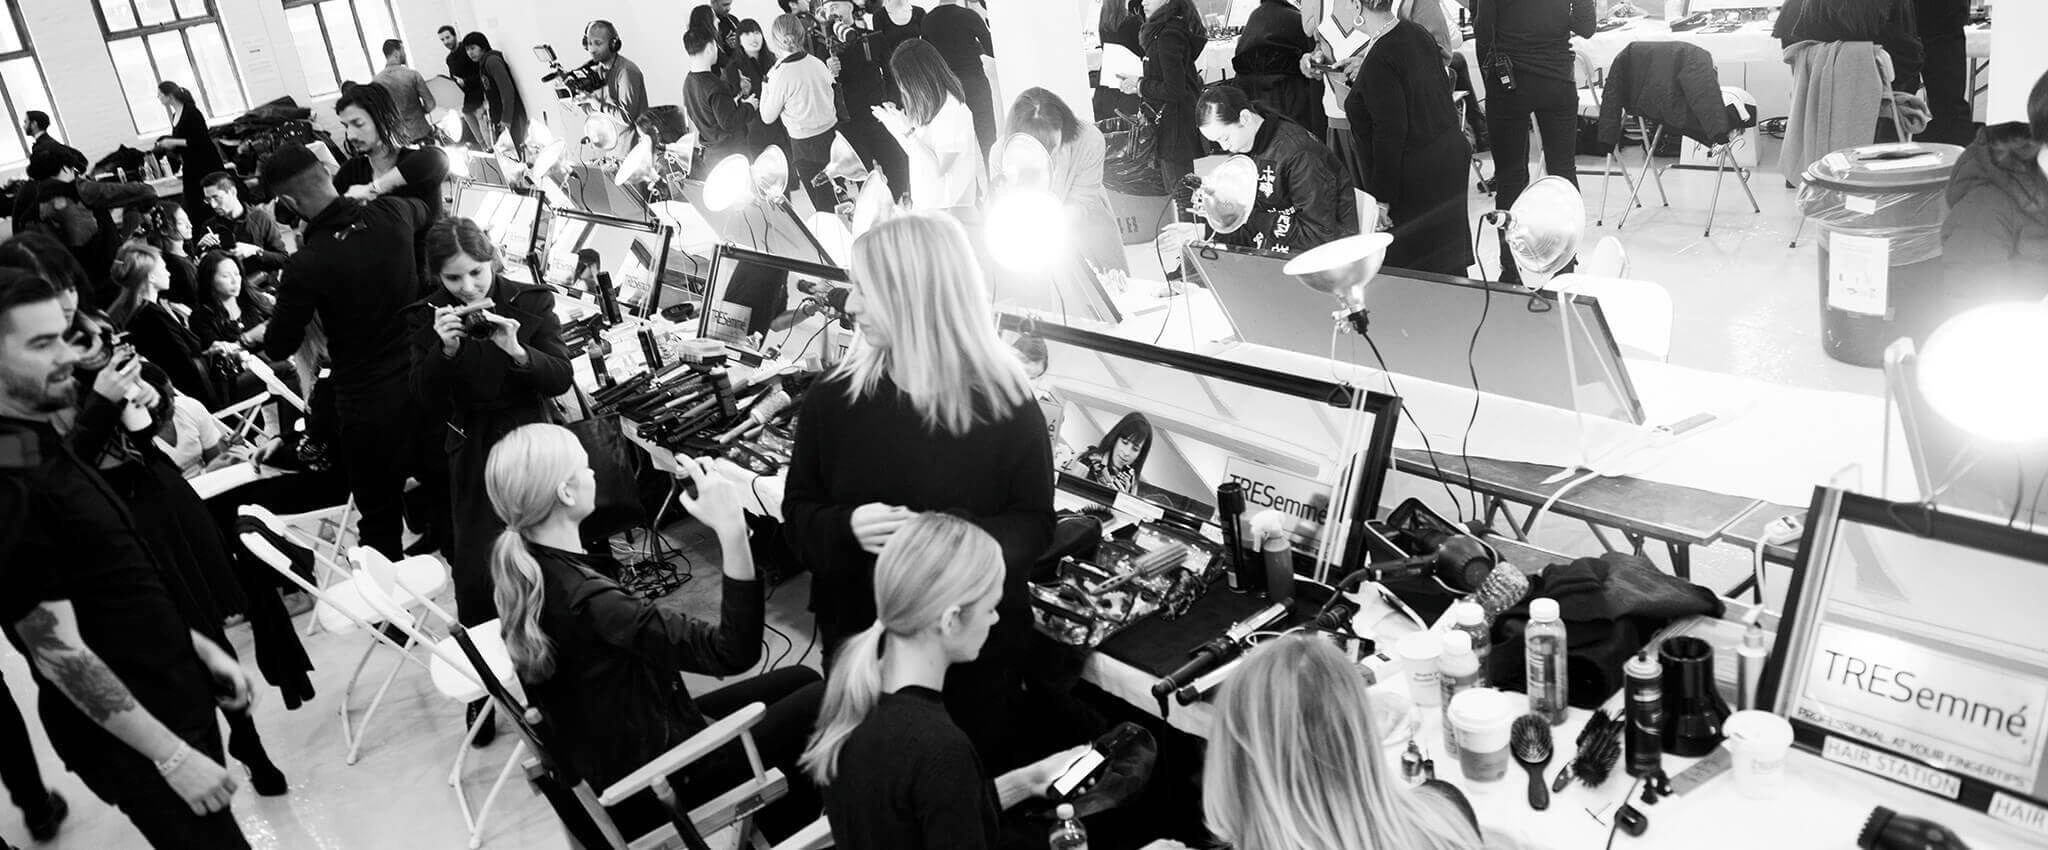 Czarno-białe zdjęcie zza kulis pokazu przedstawiające modelki siedzące przed lustrami, a wokół nich – fryzjerzy, fotografowie oraz narzędzia i produkty do stylizacji włosów